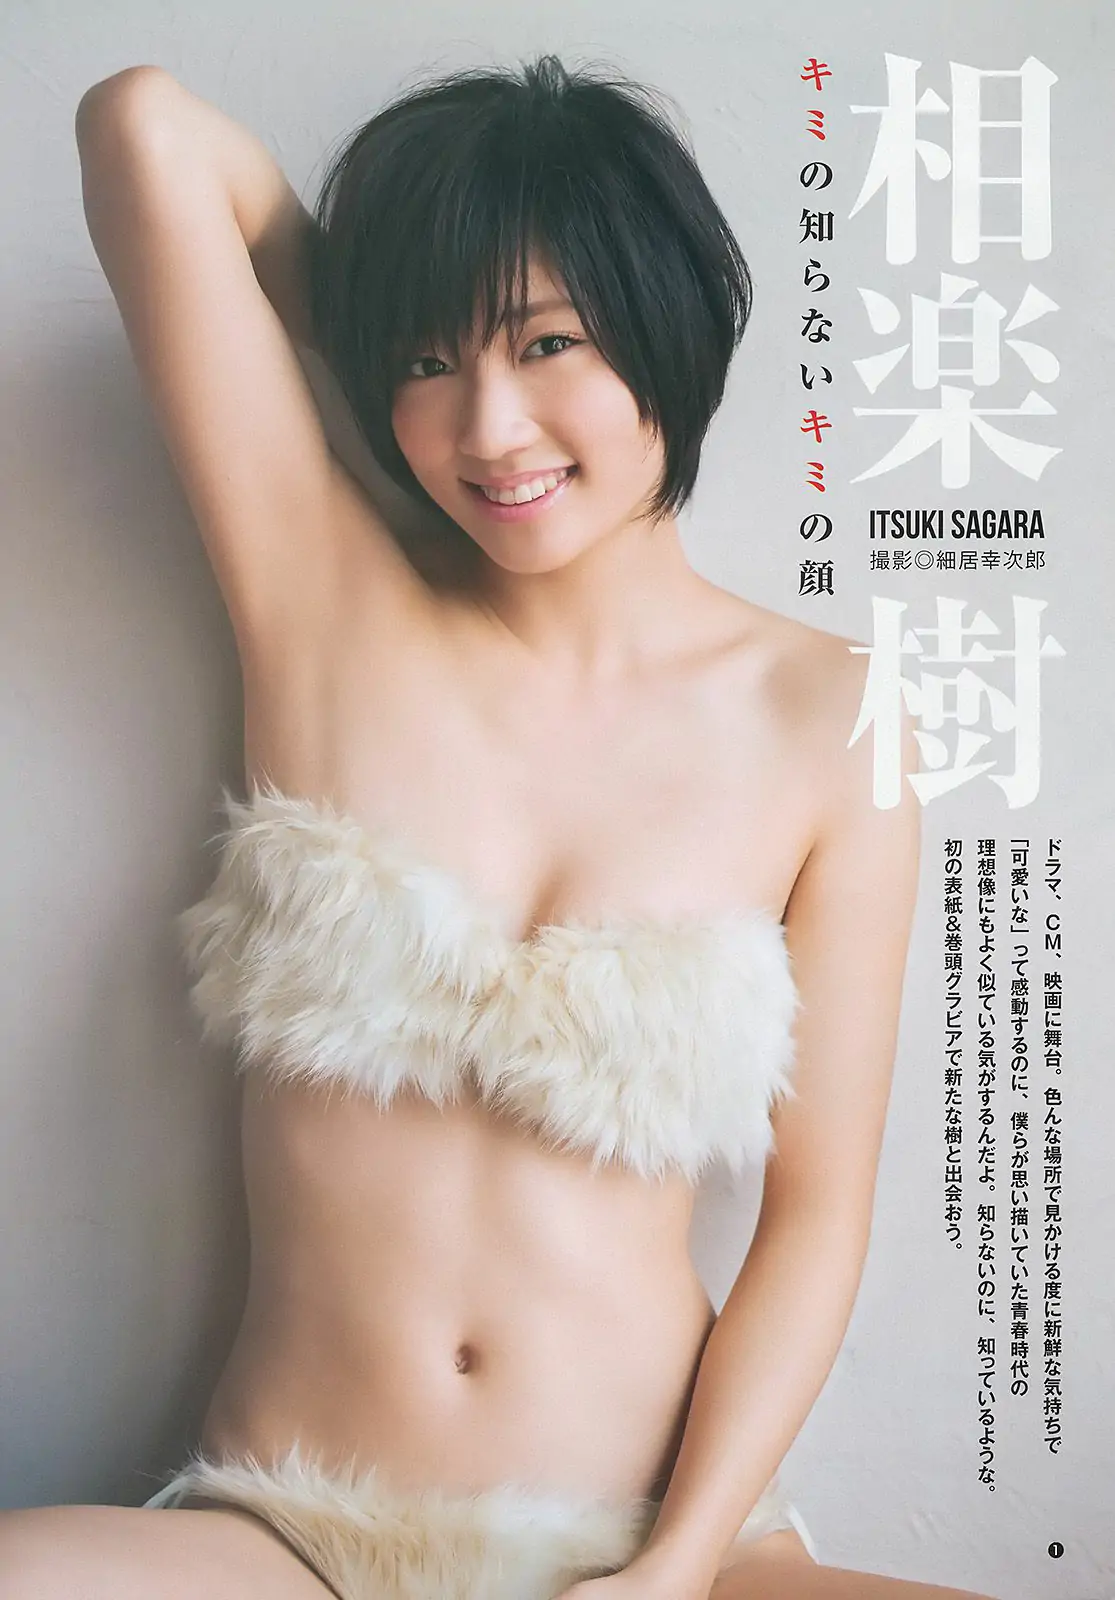 相楽樹 糸山千恵 優希美青 [Weekly Young Jump] 2013年No.50 写真杂志